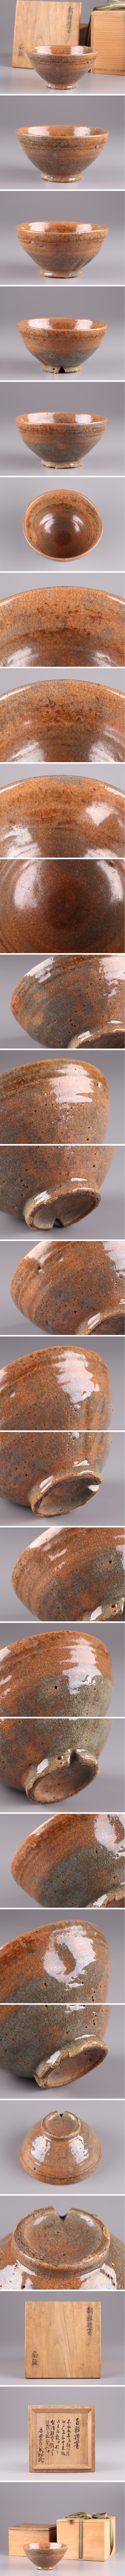 格安在庫あ古美術 朝鮮古陶磁器 朝鮮禮宝 茶碗 書付 二重箱 時代物 極上品 初だし品 1431 高麗